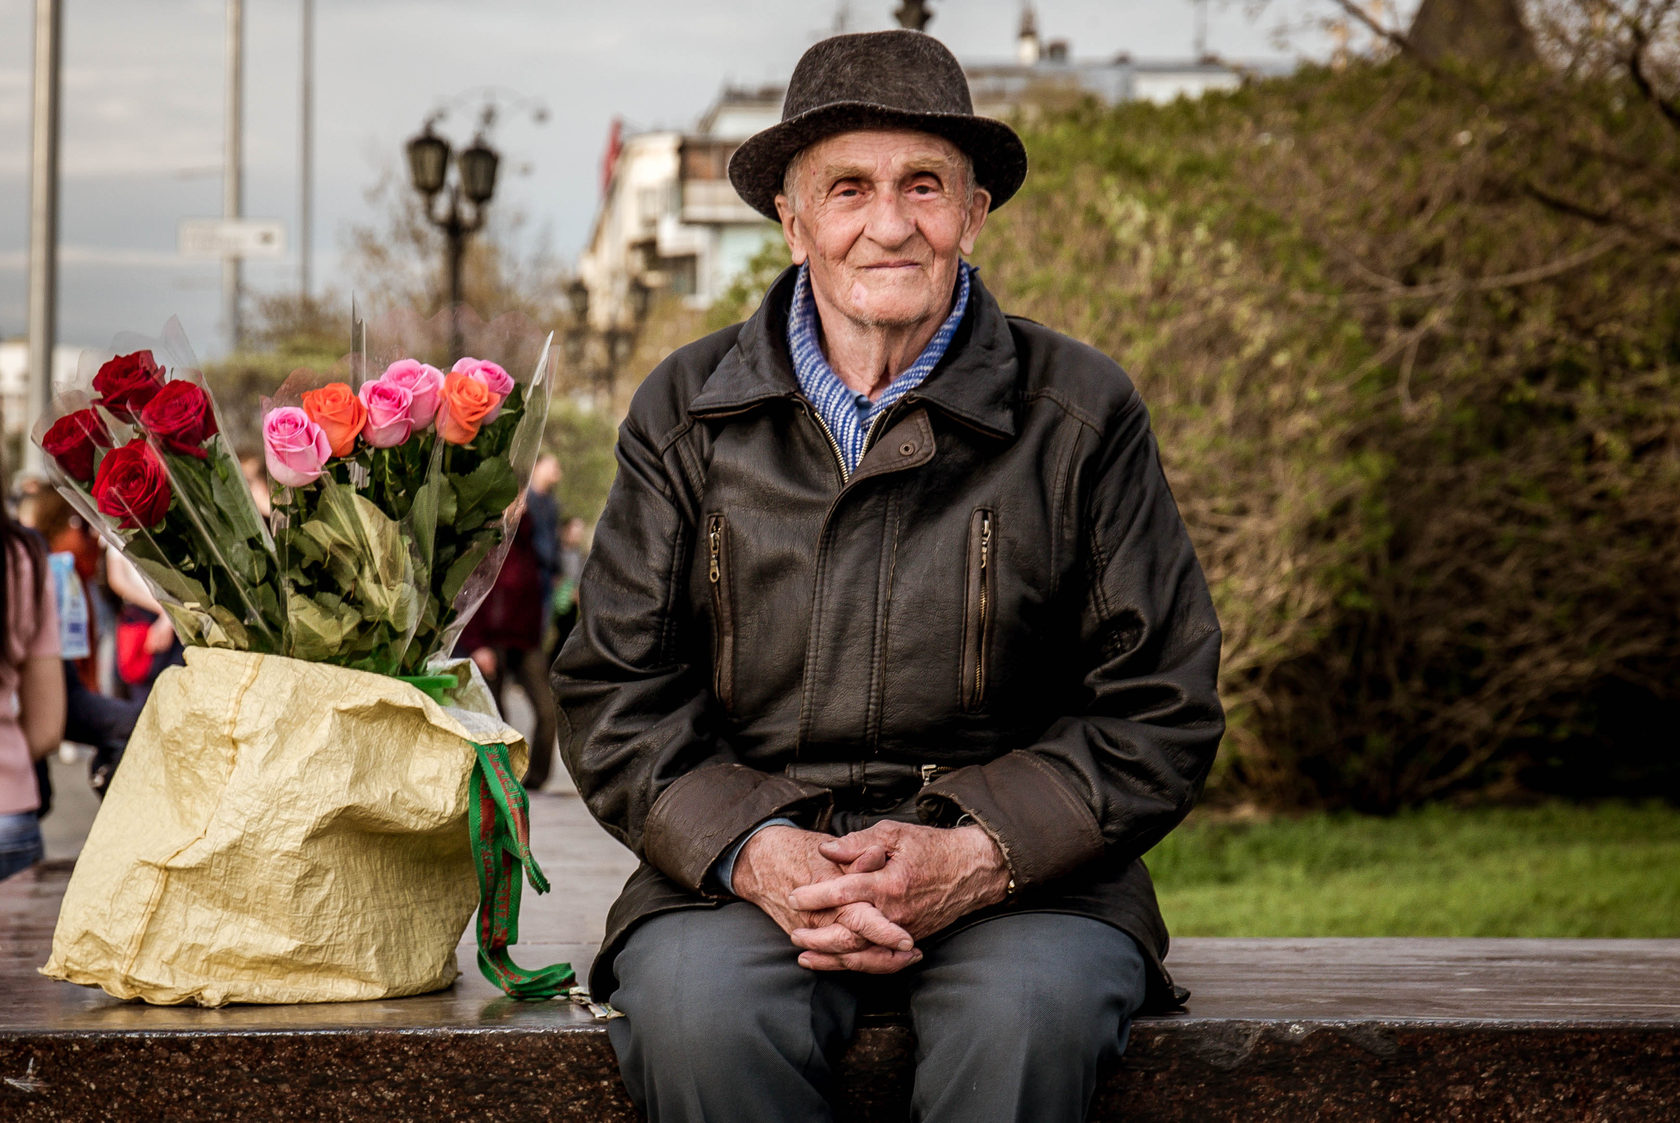   Ветеранам труда положена иная пенсия: Минтруд России разъясняет, что людям полагается солидная прибавка 